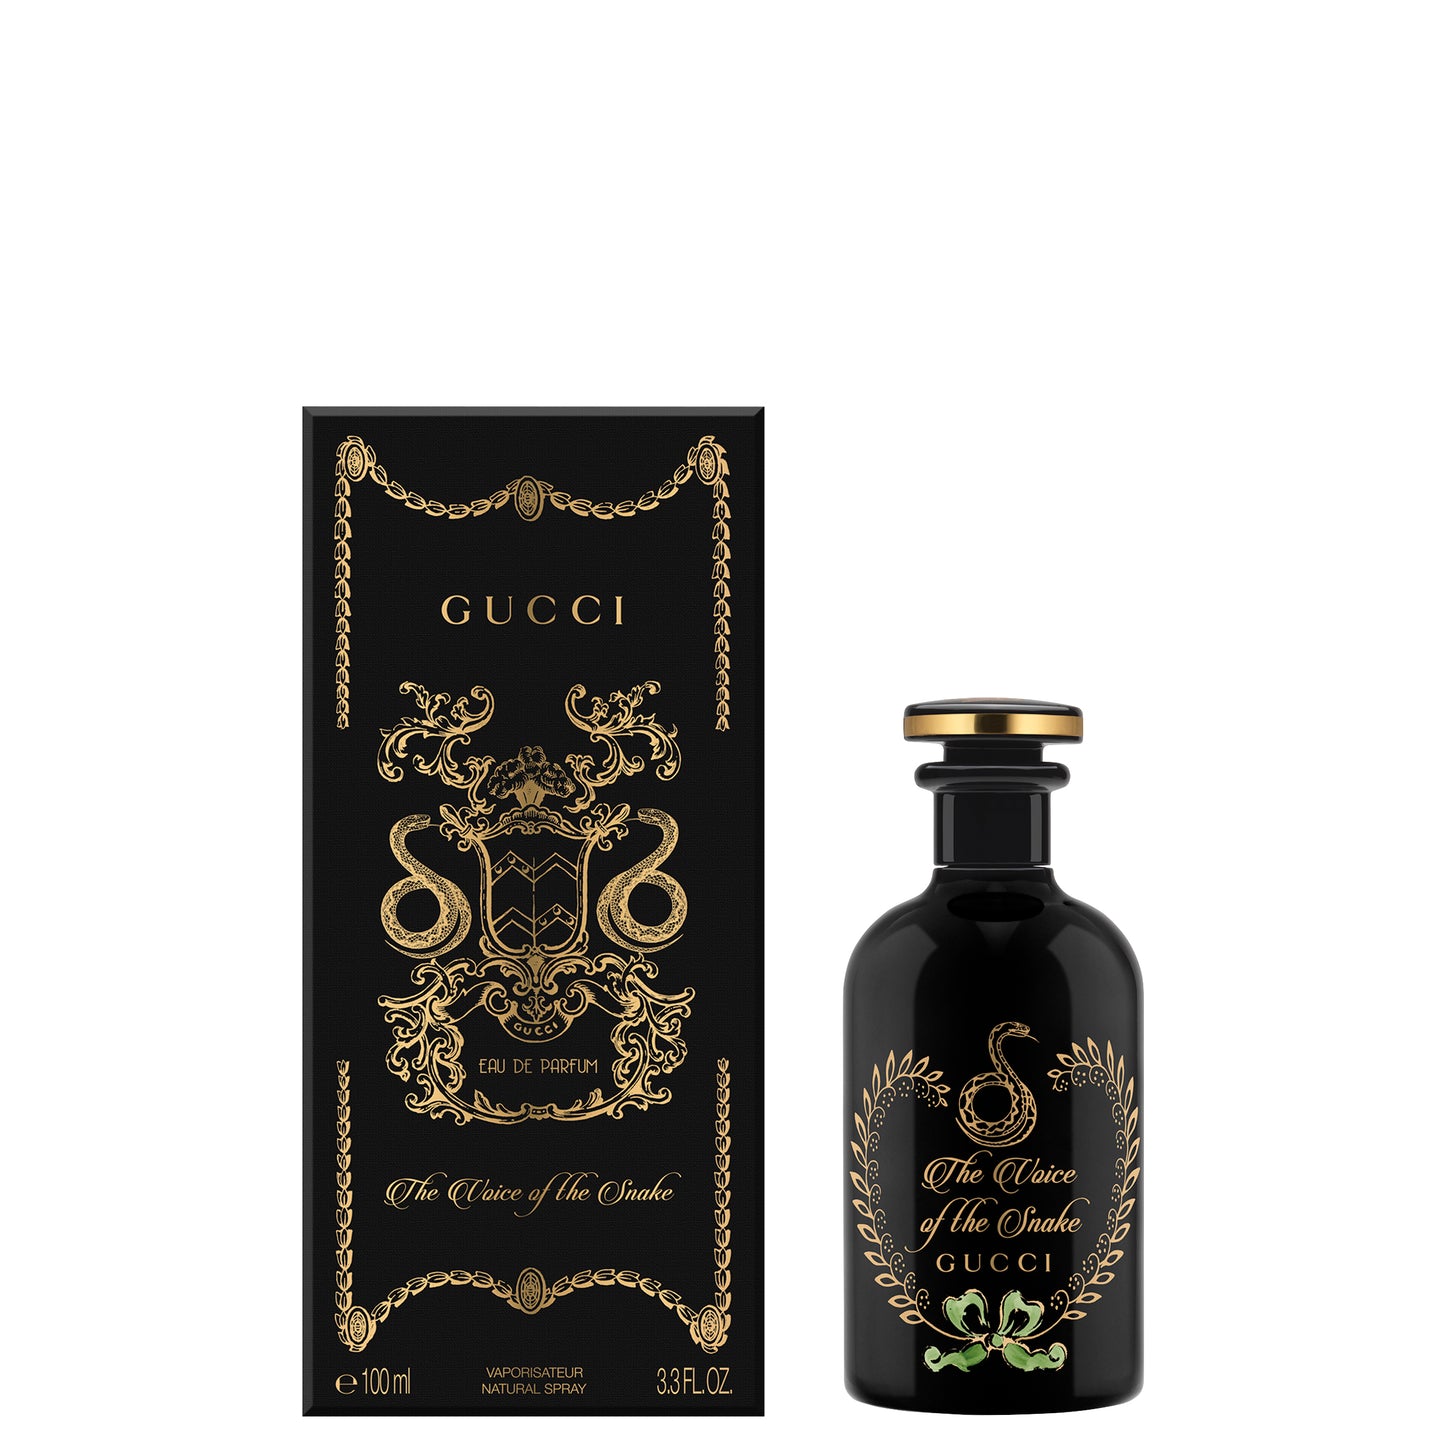 Gucci Alchemist Garden The Voice of the Snake Eau de parfum 100 ML